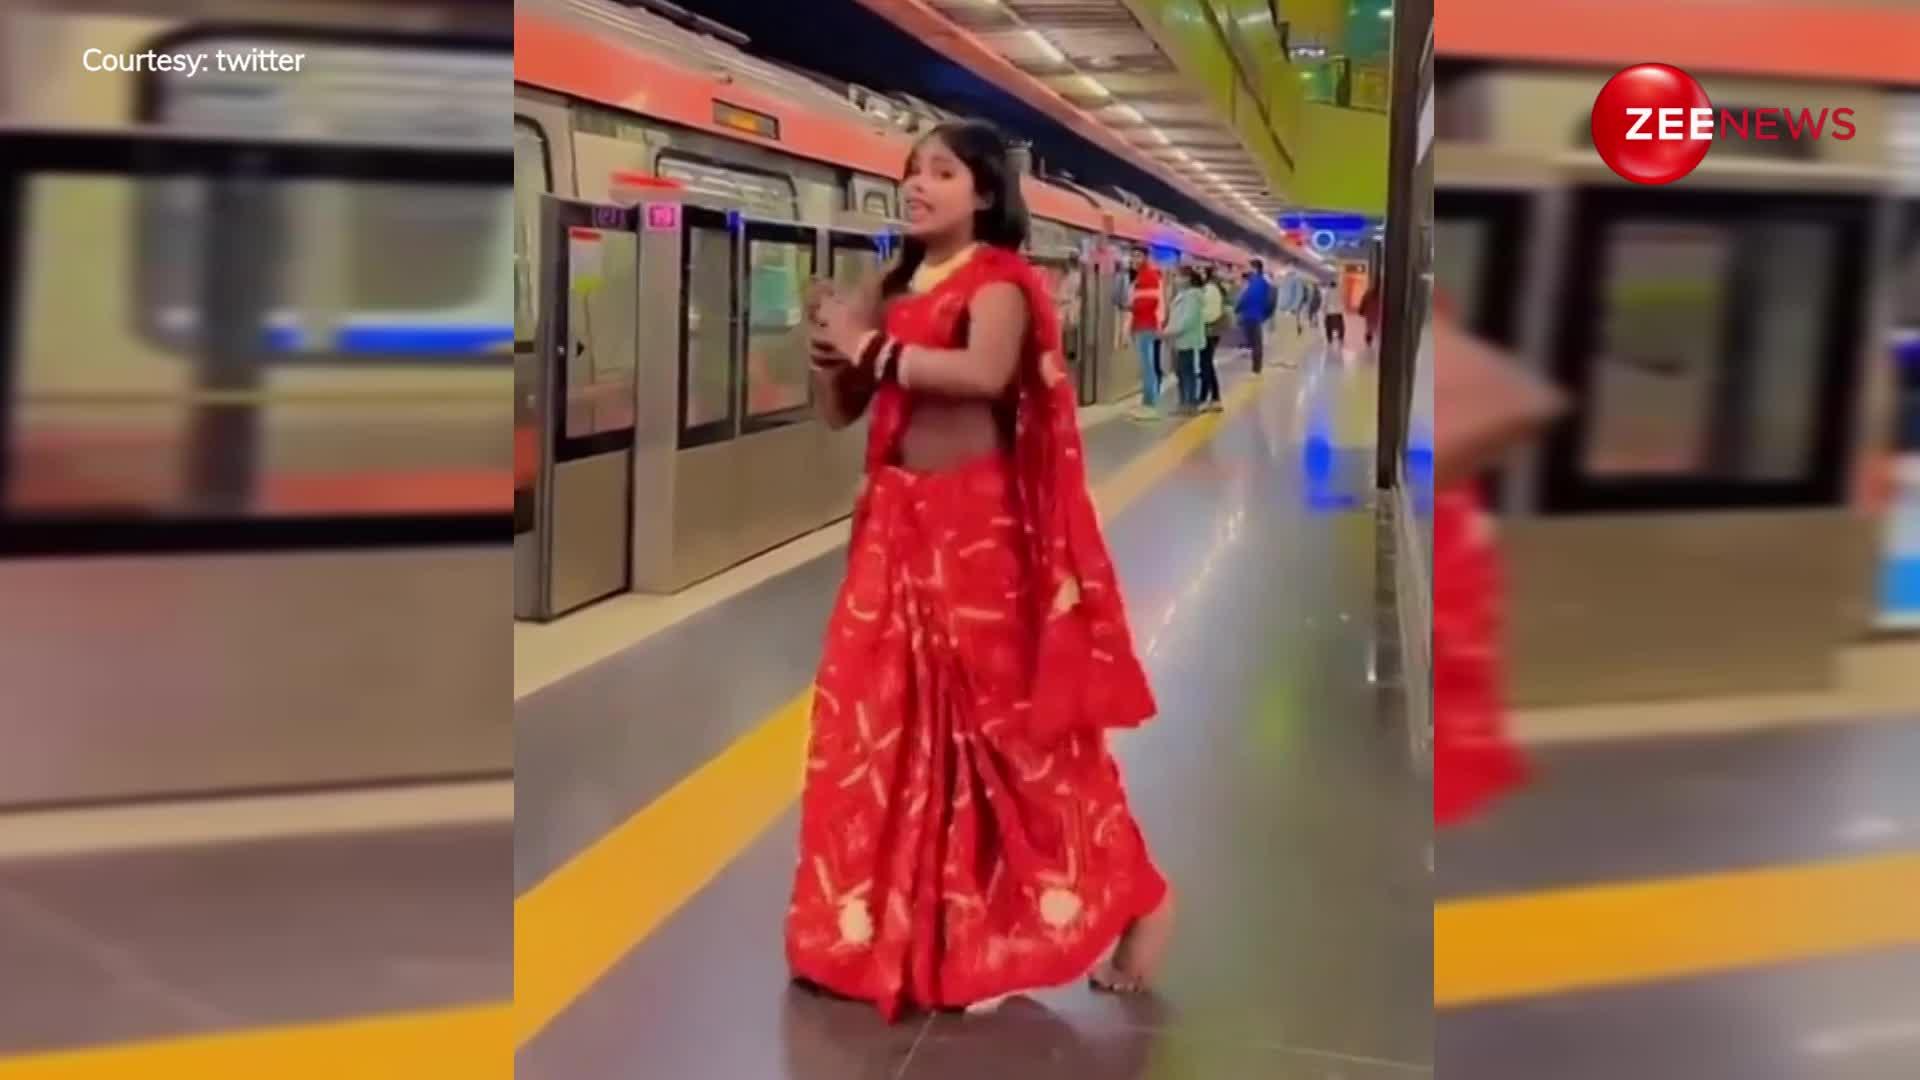 नई नवेली दुल्हन ने मेट्रो स्टेशन पर लाल साड़ी में किया जोरदार डांस, देख बोले लोग- हाय, करंट मारती है ये तो